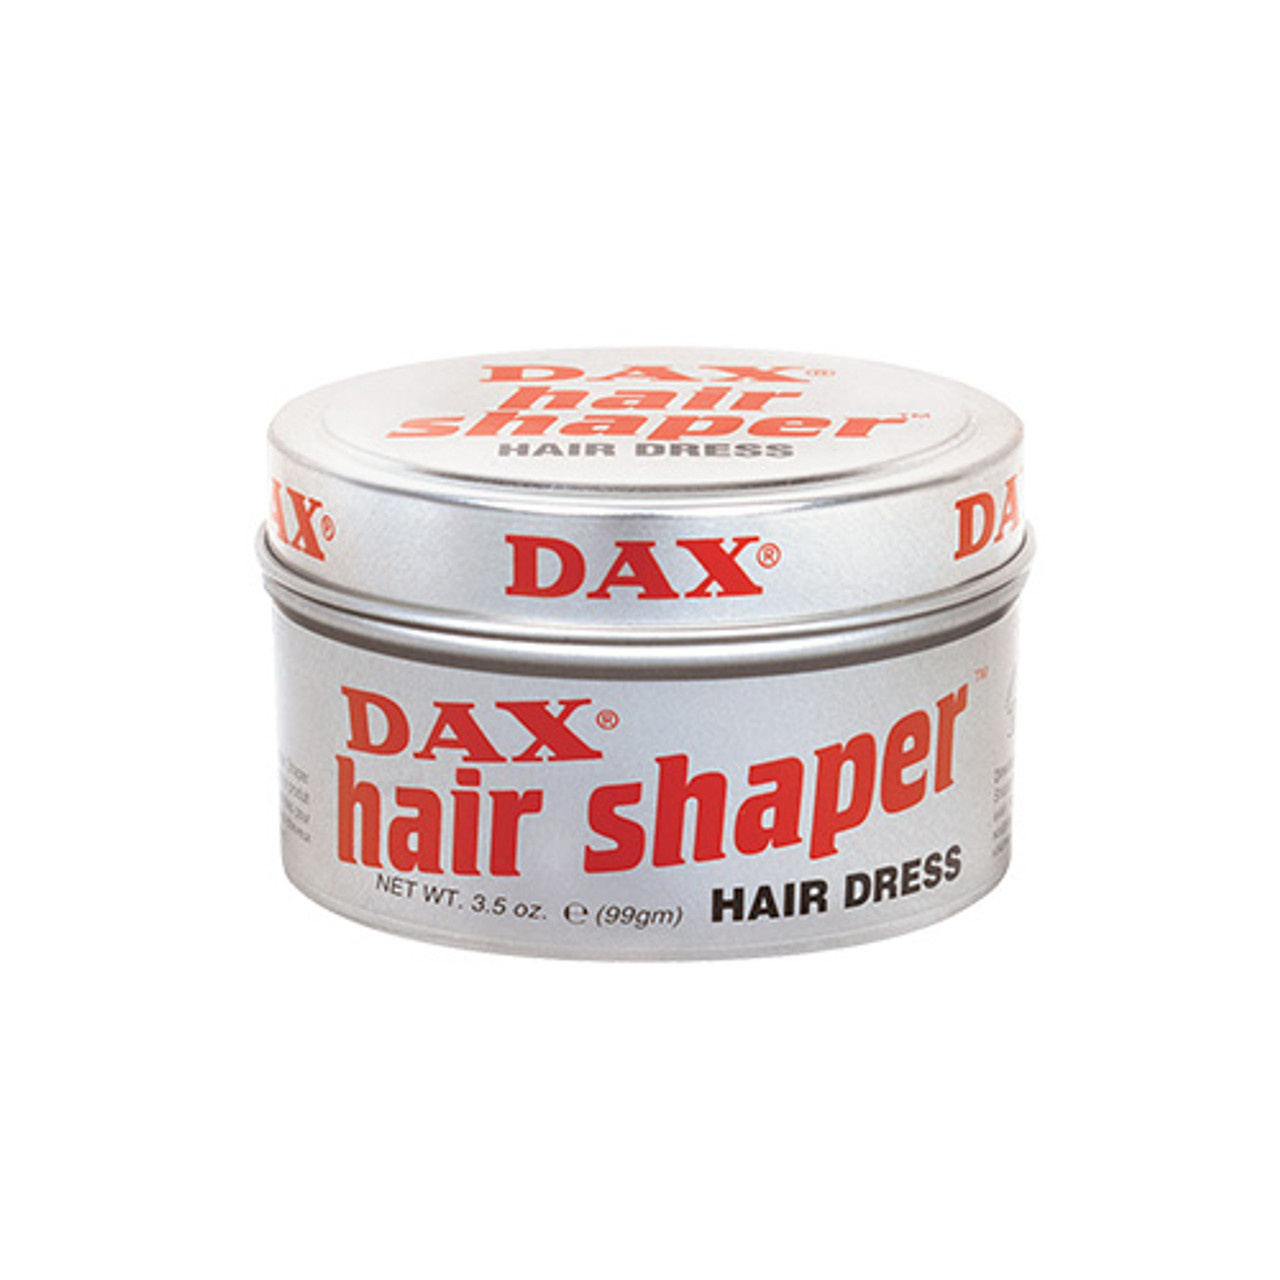 DAX Hair Shaper Hair Dress Review - JC Hillhouse DAX Review –